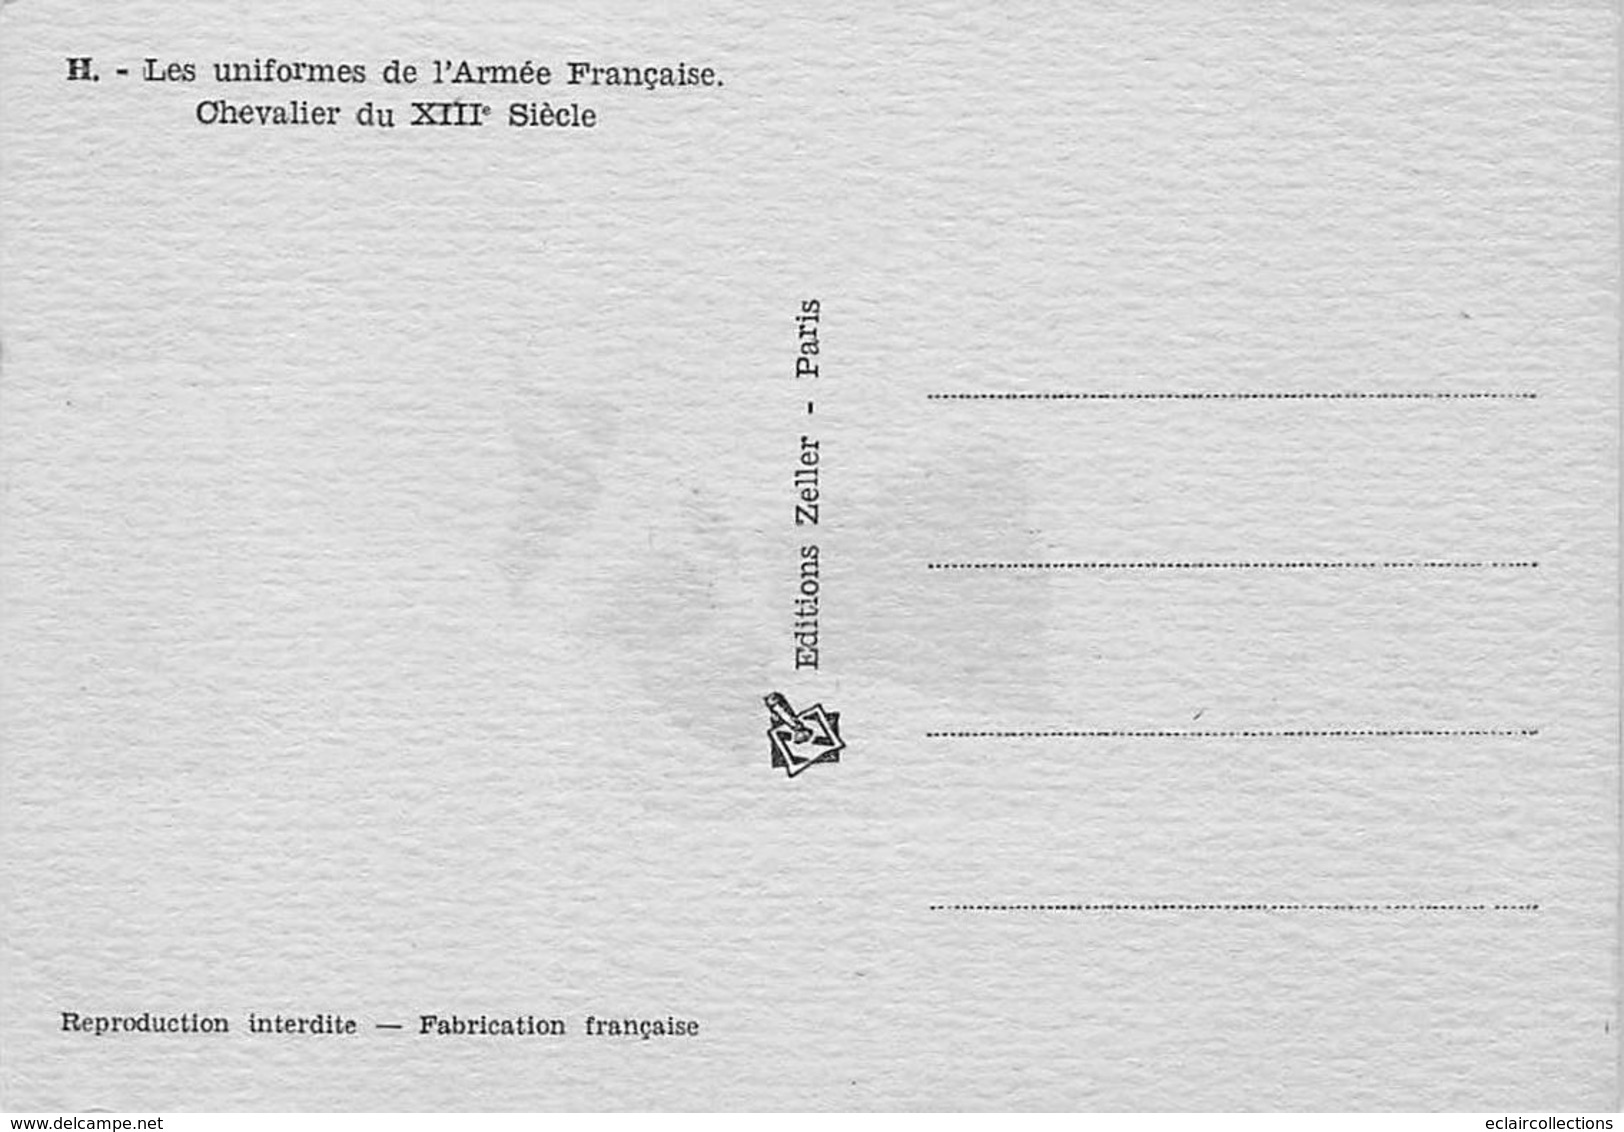 Thème Illustrateur Kermorver . Lot de 10  cartes: Uniformes de l'Infanterie Française      (voir scan)